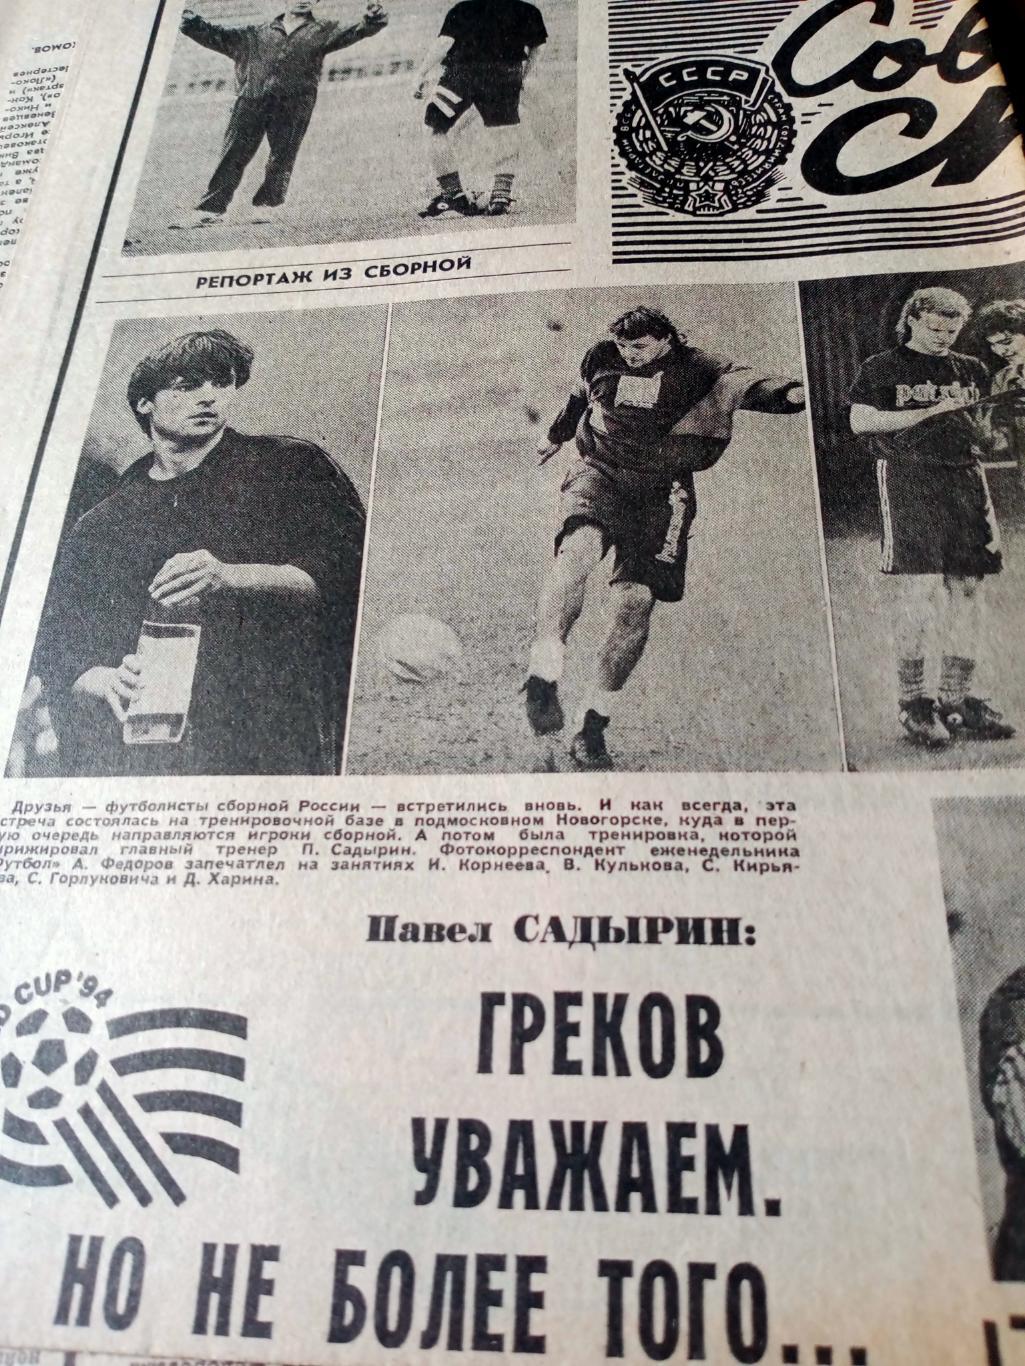 Репортаж из сборной. Советский спорт. 1993 год. 21 мая